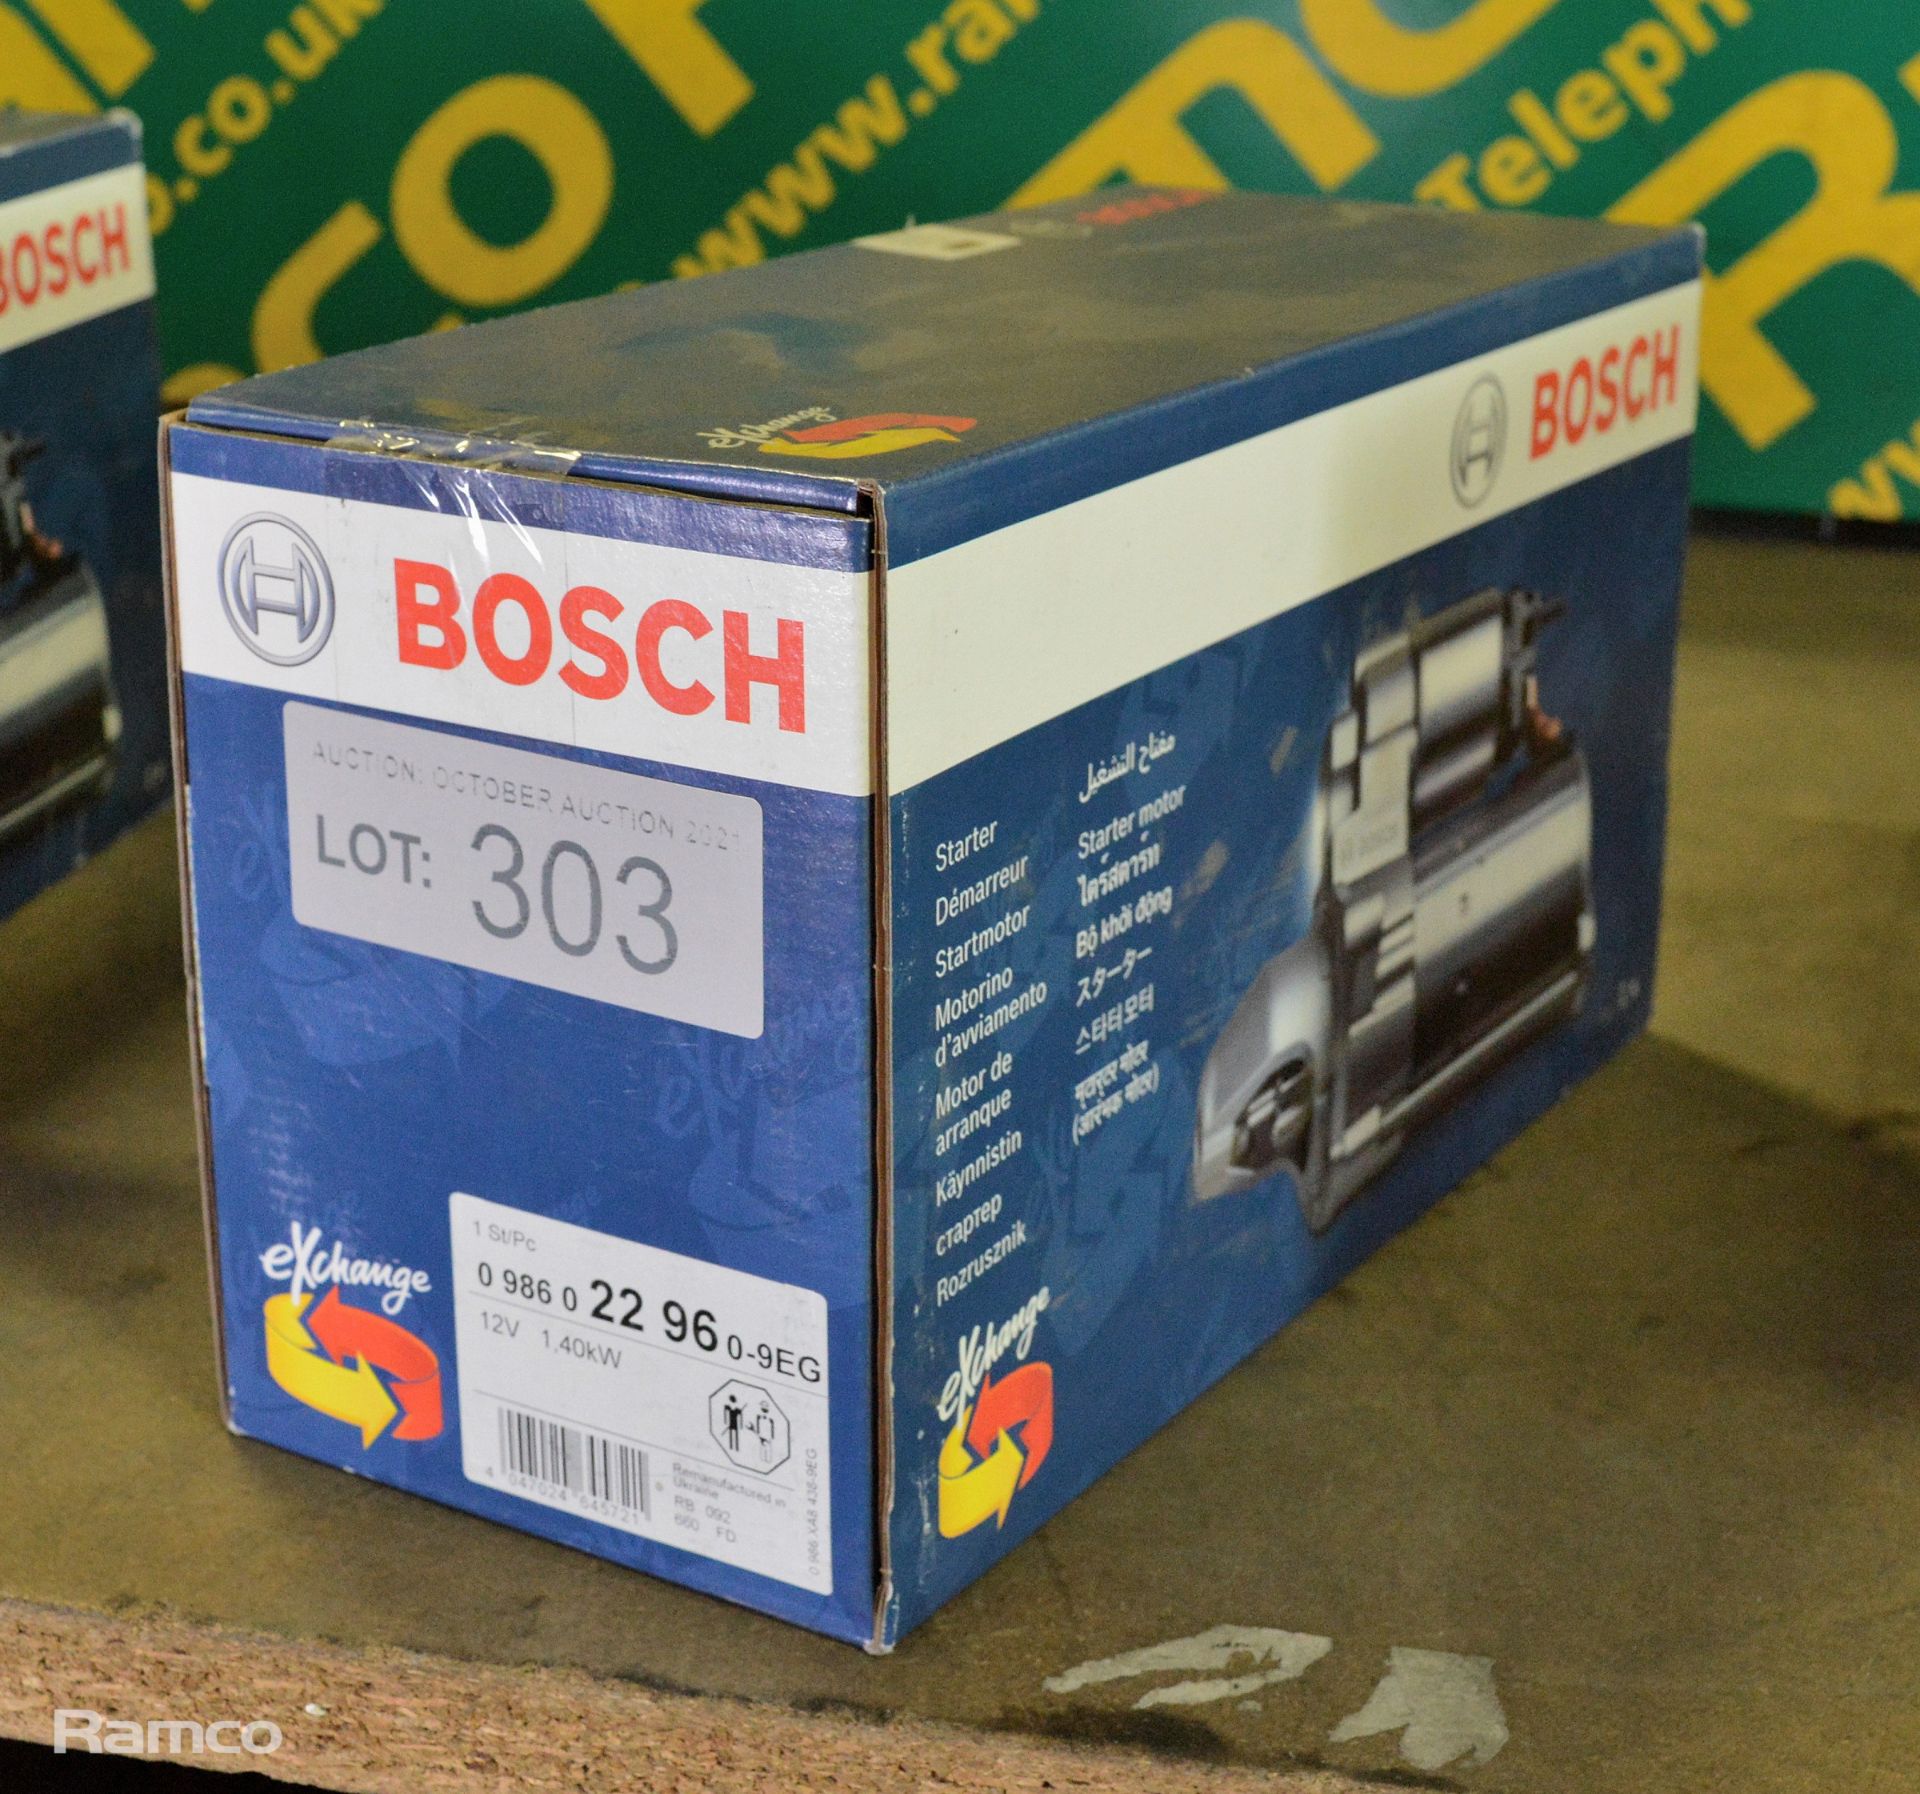 Bosch starter motor - 22 96 - 12V 1.40kW